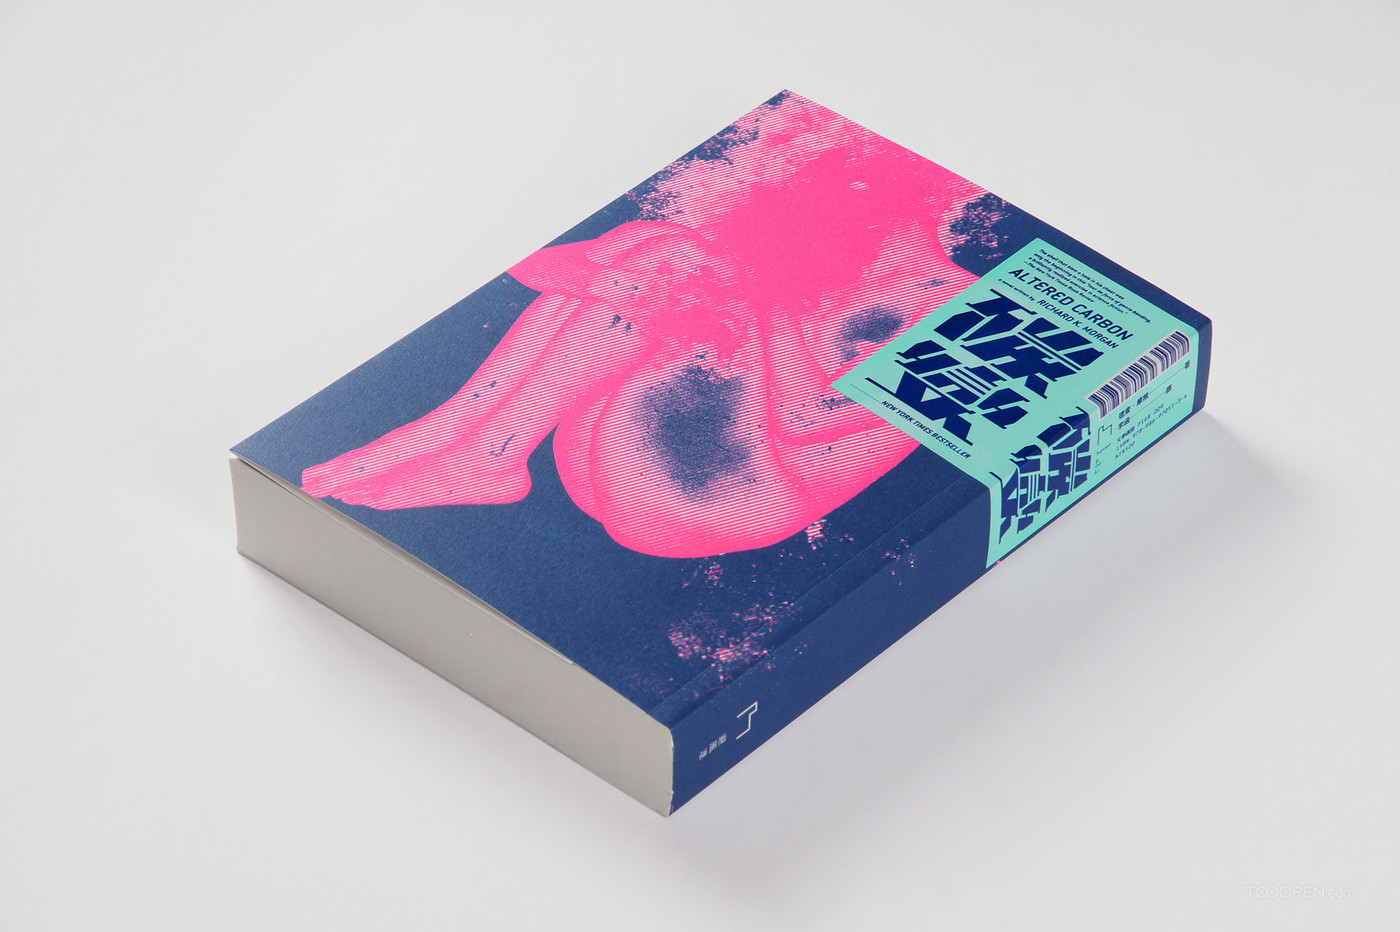 《碳变》艺术人物封面书籍装帧设计作品欣赏-03